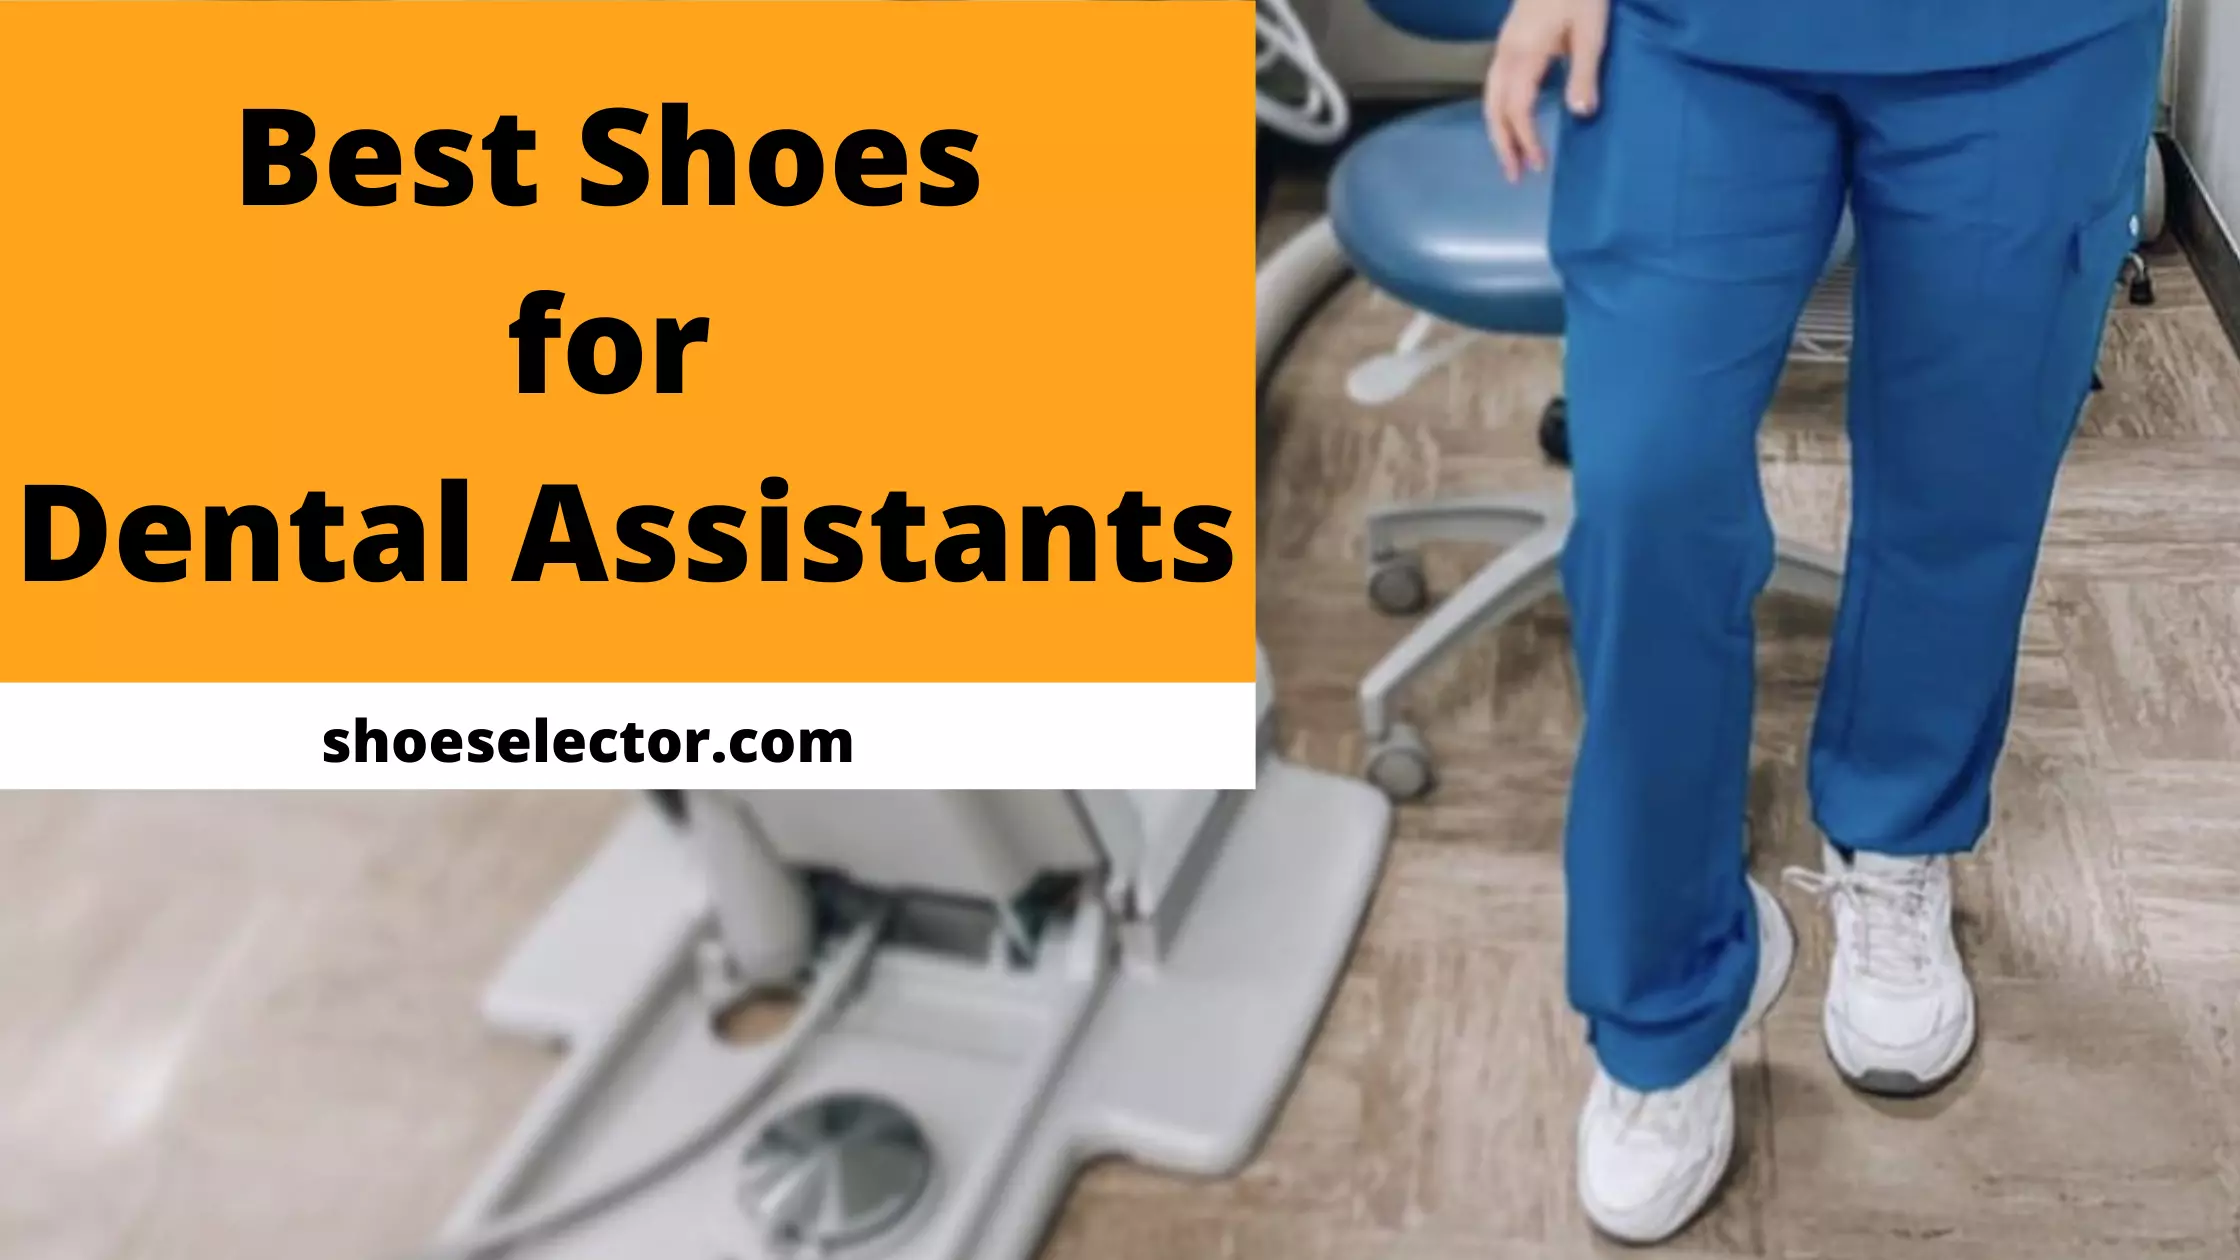 Best Shoes For Dental Assistants - Top Picks Revealed